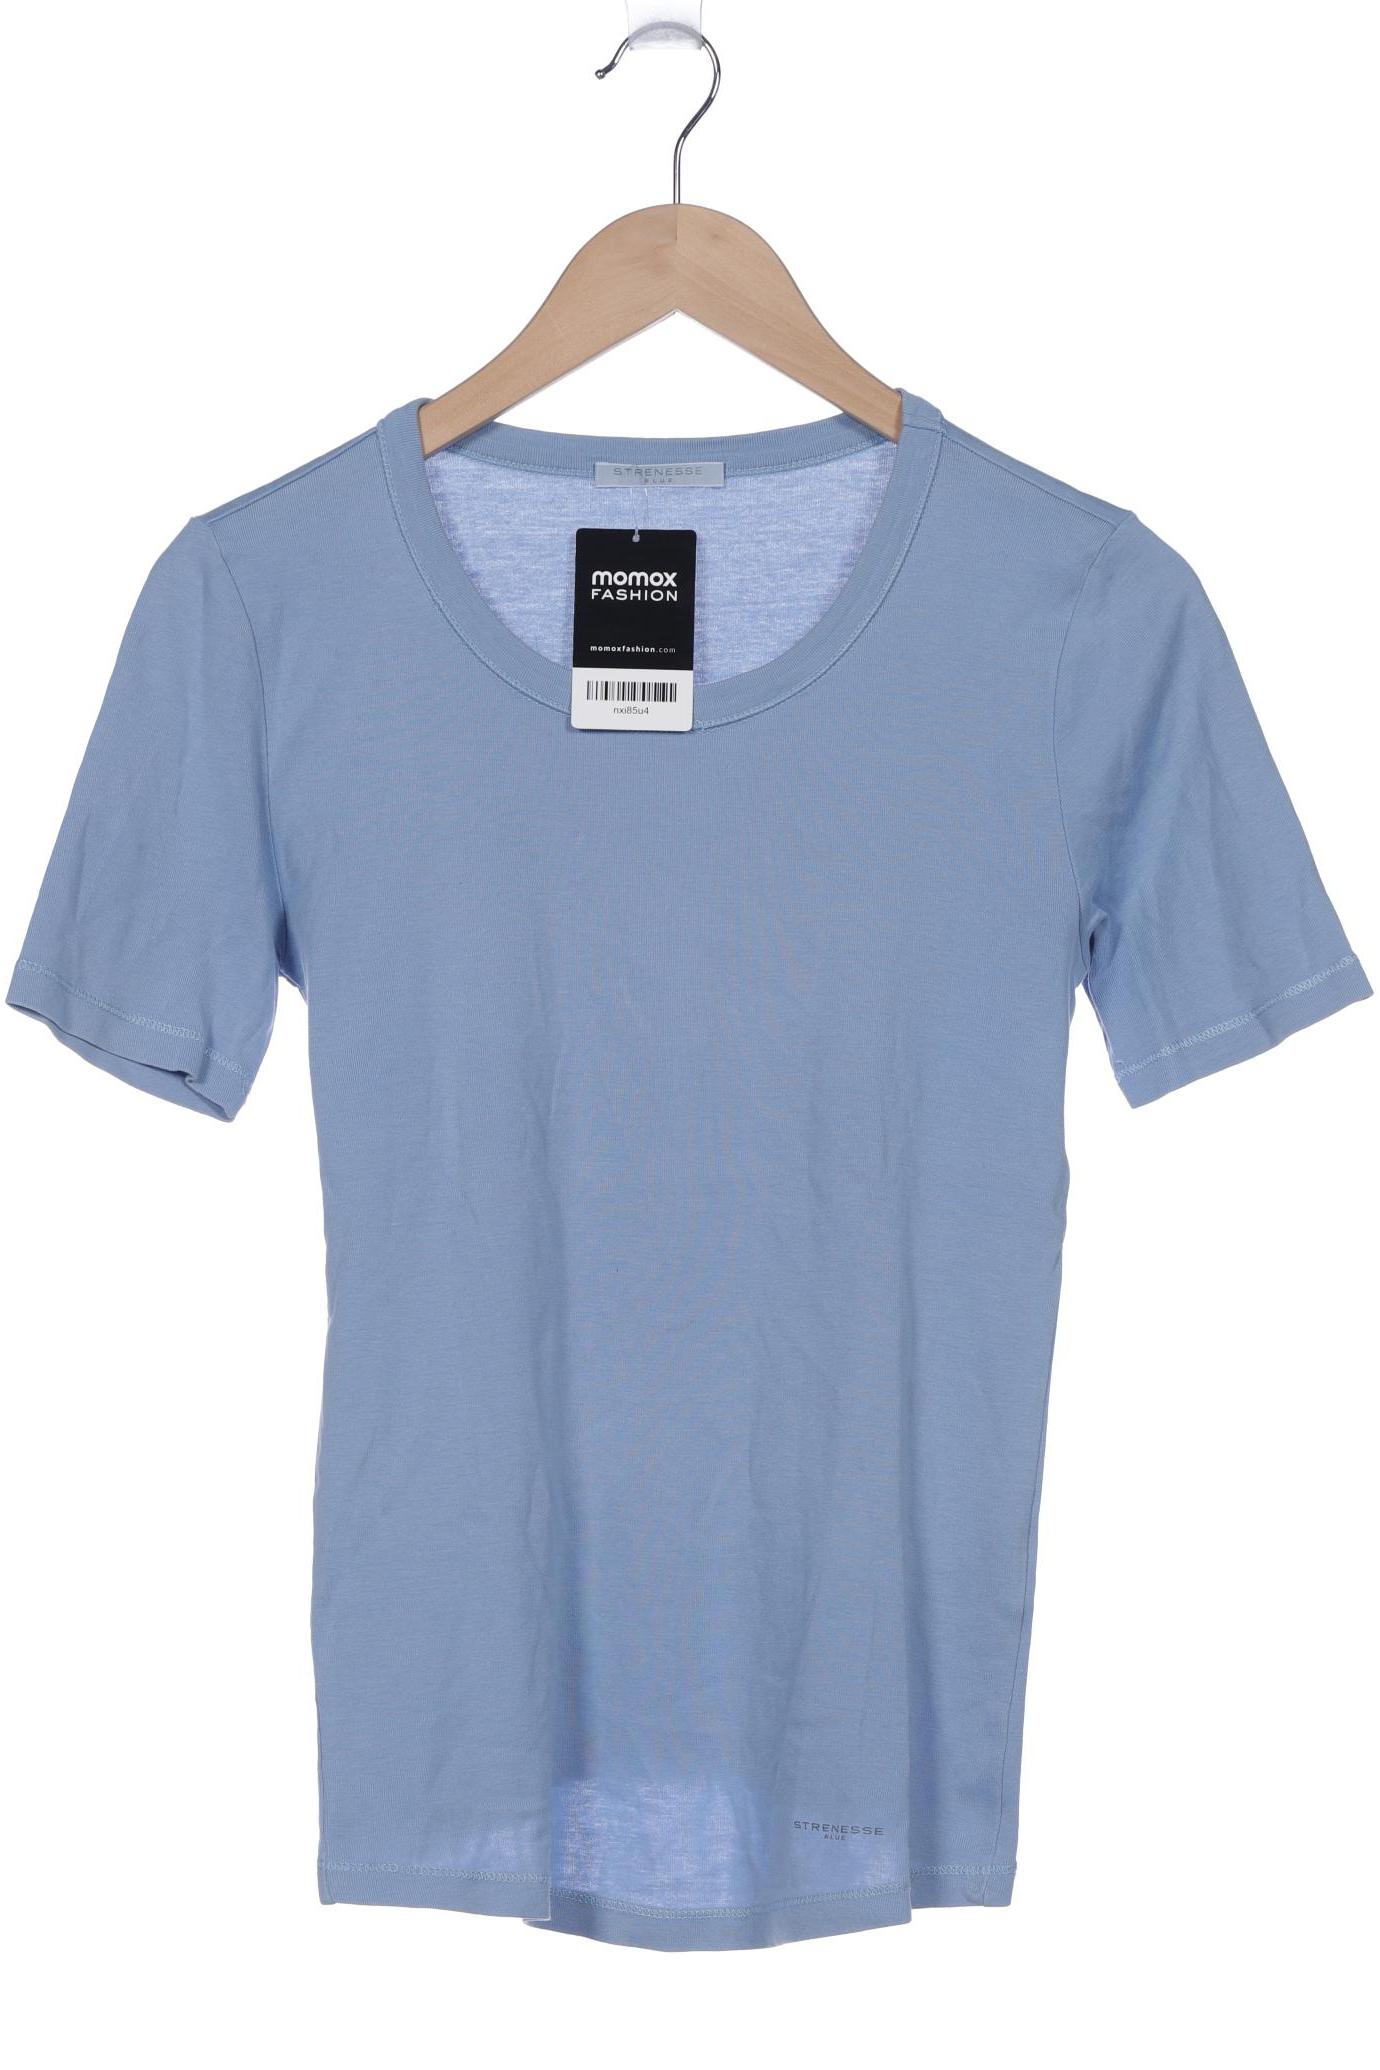 Strenesse Damen T-Shirt, hellblau von Strenesse